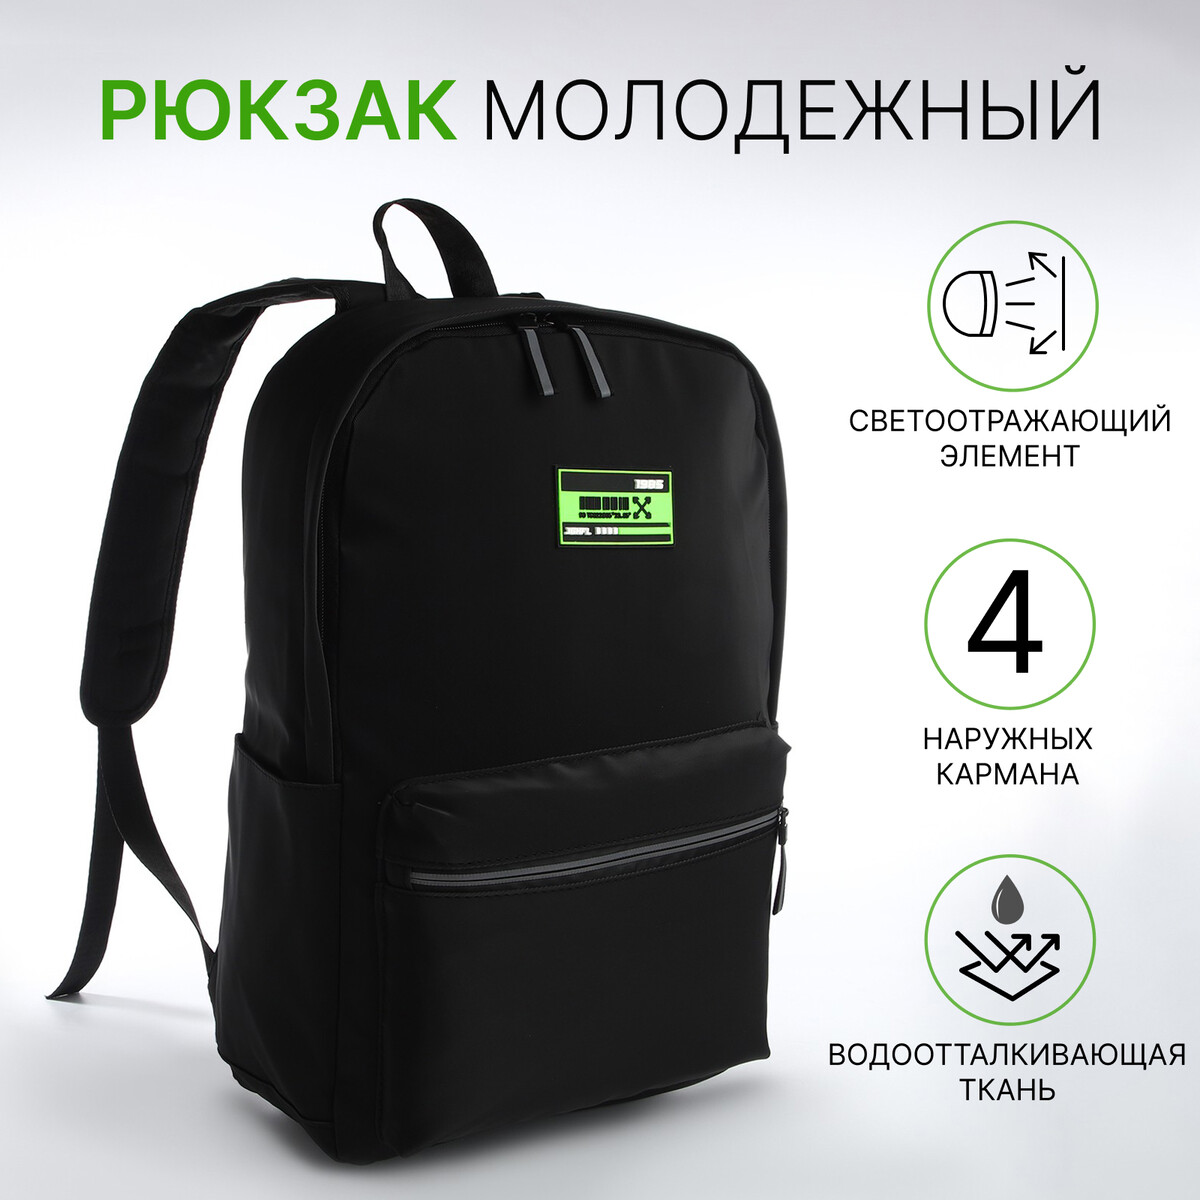 Рюкзак молодежный из текстиля на молнии, 2 кармана, цвет черный/зеленый рюкзак молодежный из текстиля на молнии 3 кармана зеленый